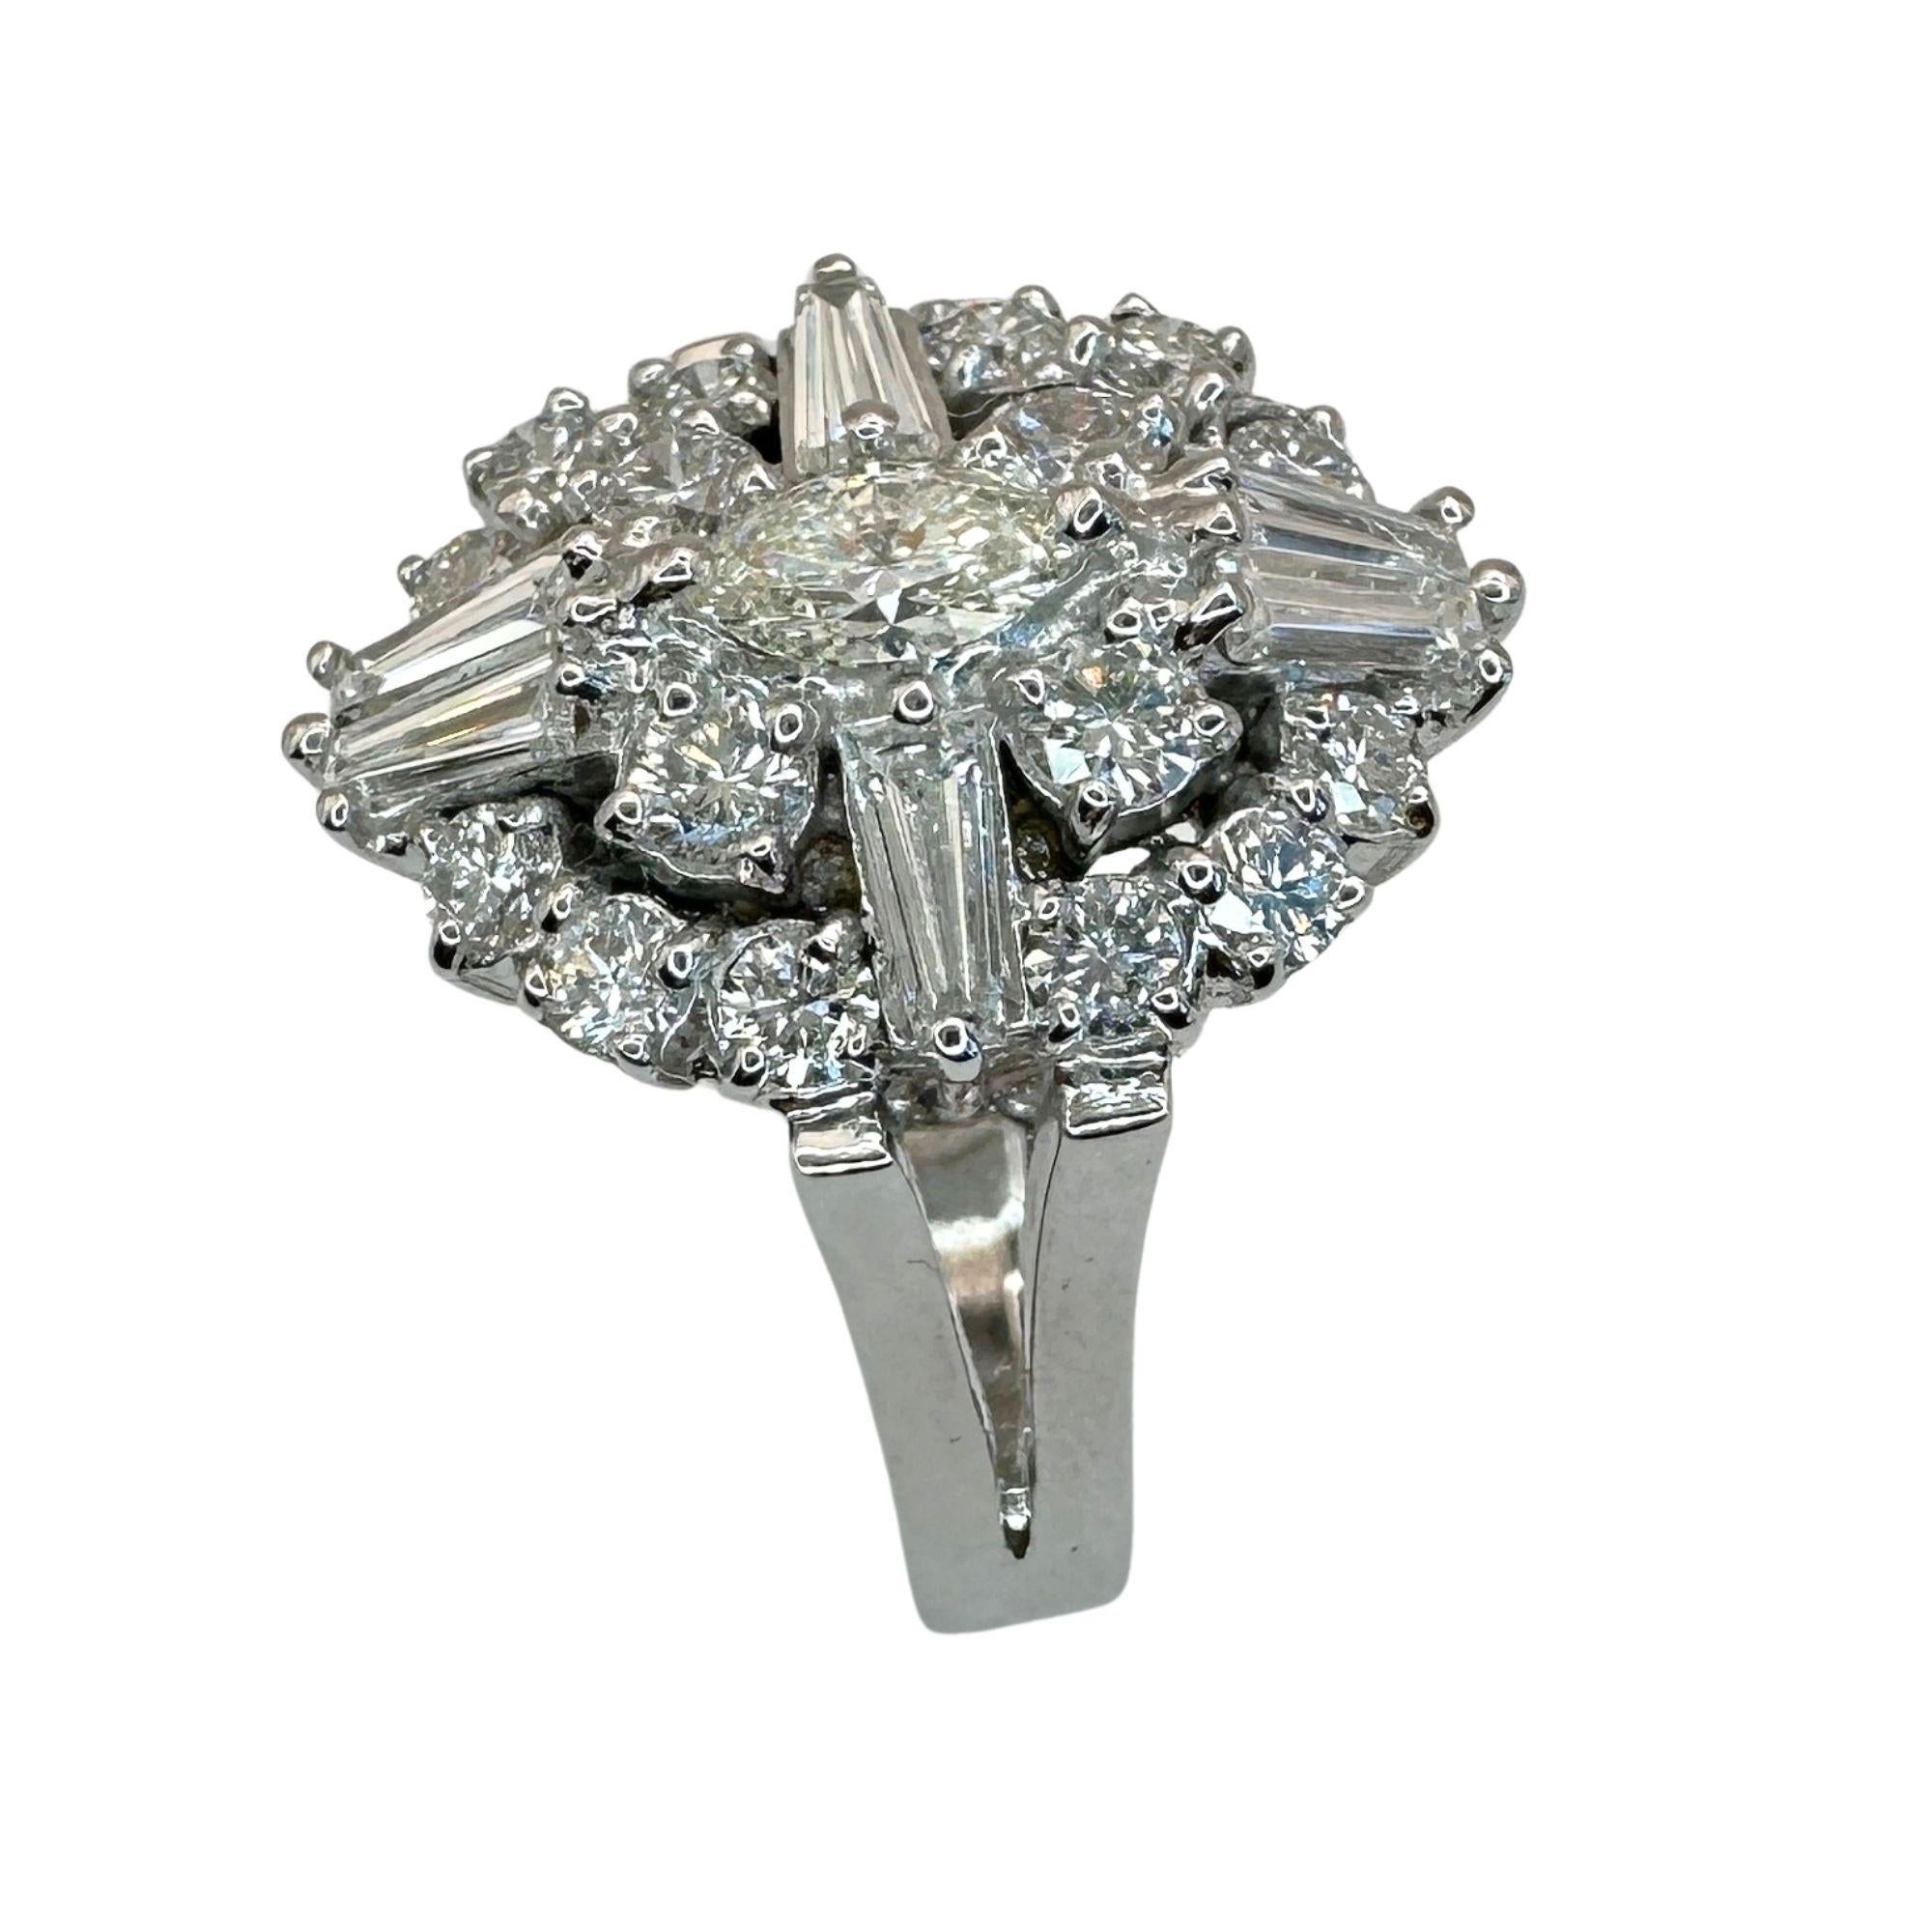 Gönnen Sie sich Luxus mit diesem atemberaubenden 18k Baguette und Marquise Cut Diamond Ring. Dieses exklusive Schmuckstück ist aus 18 Karat Weißgold gefertigt und mit 1,55 Karat funkelnden Diamanten in einer einzigartigen Kombination von Schliffen